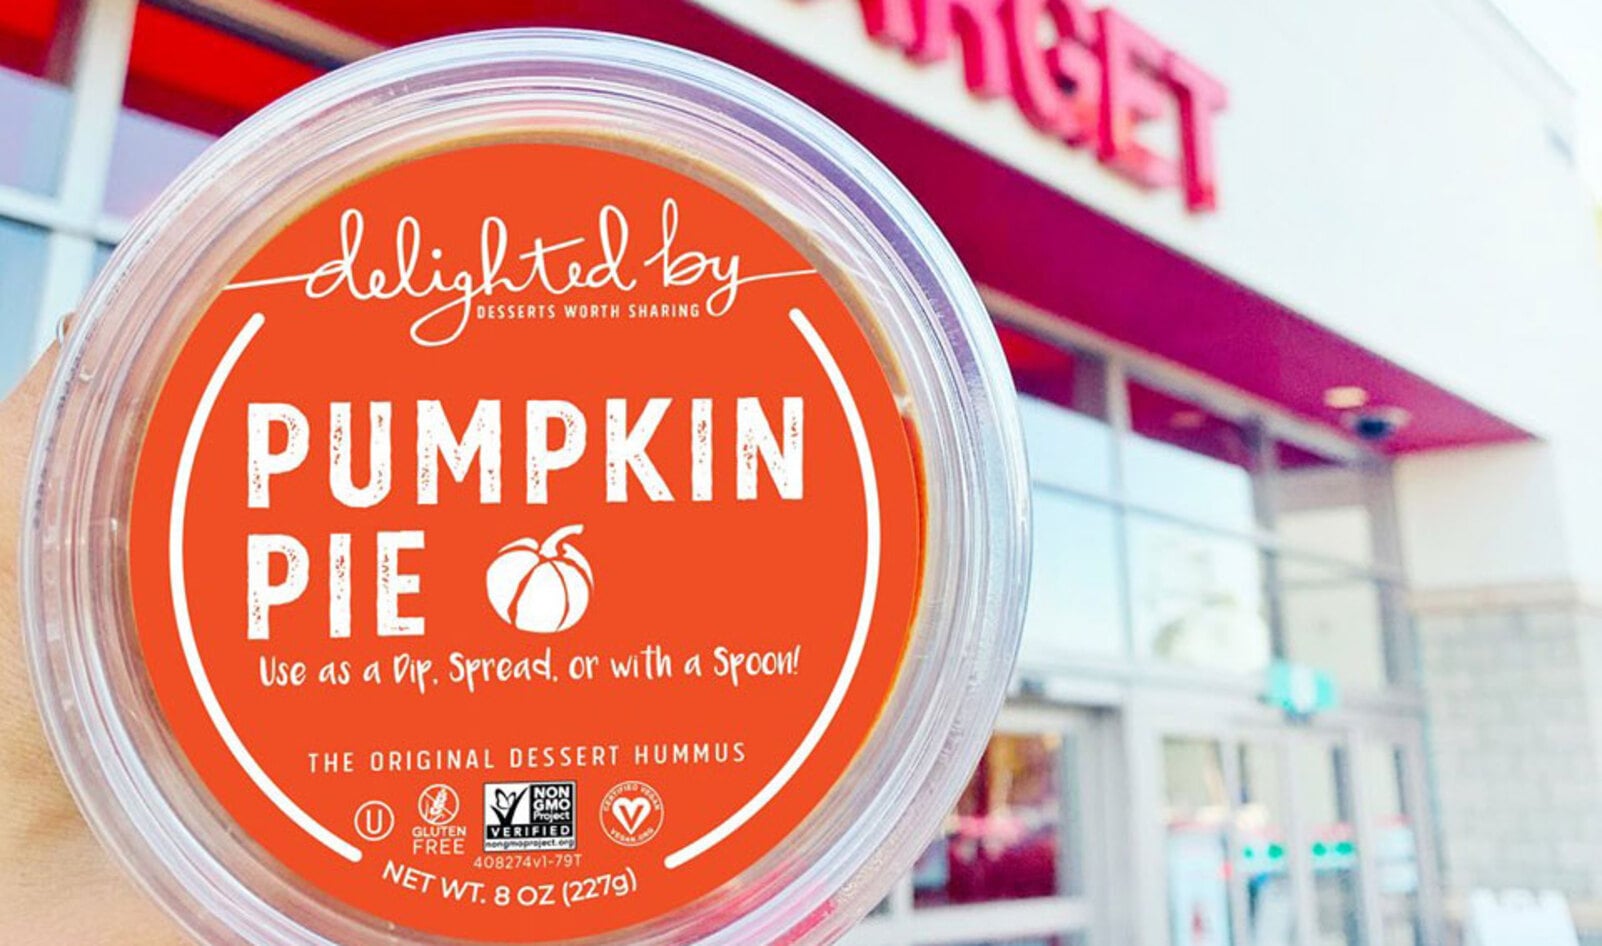 Vegan Pumpkin Pie Dessert Hummus is Now at Costco and Target